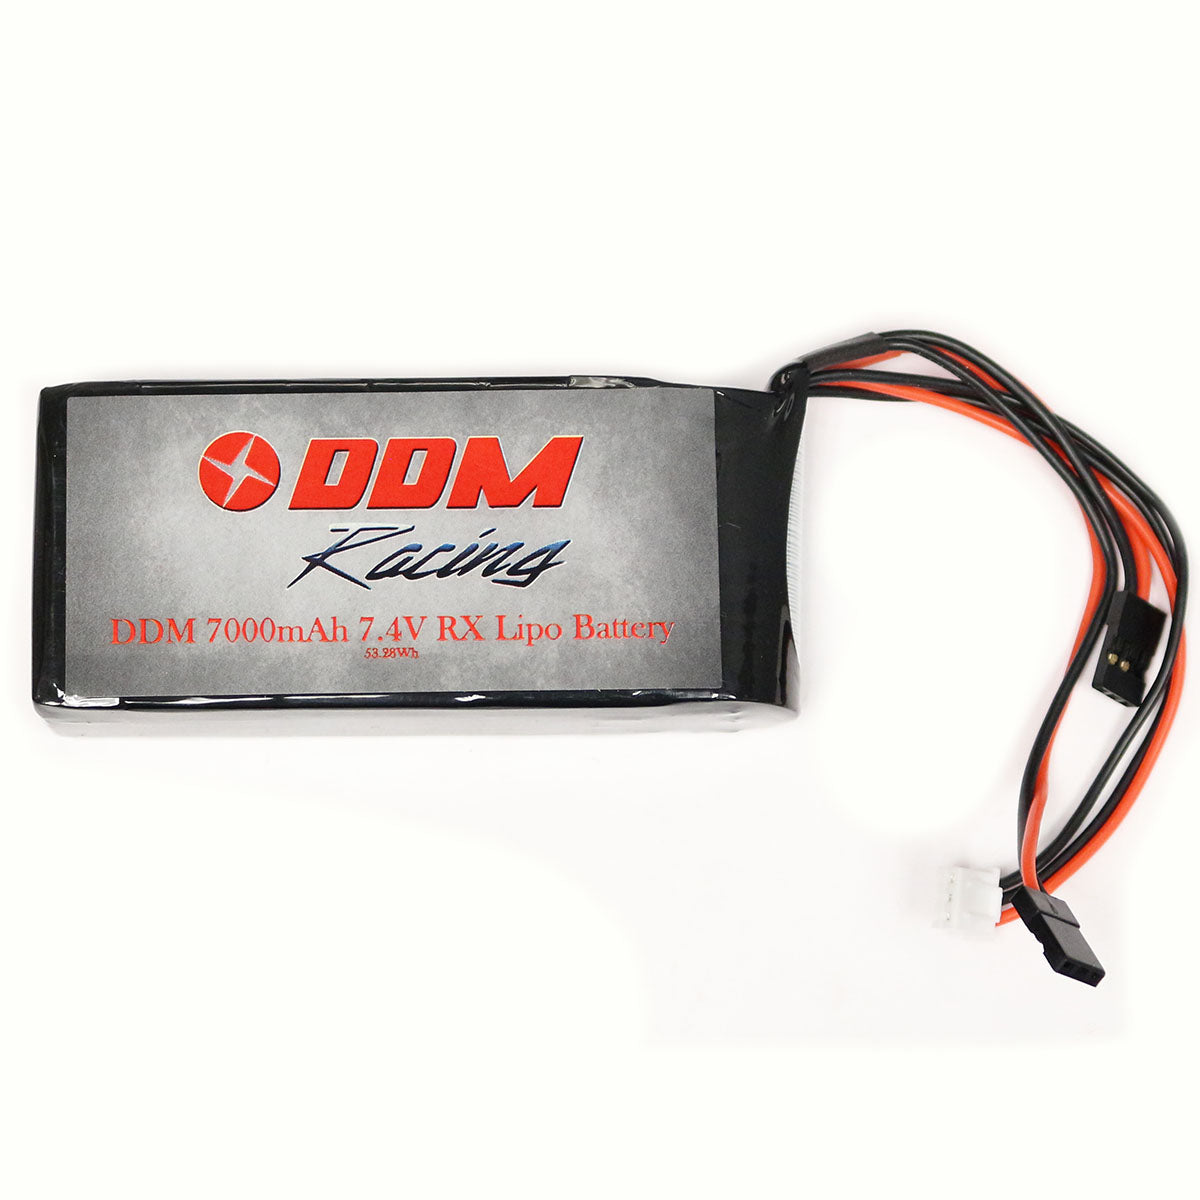 DDM Racing 7.4v 7000mAh LiPo RX Battery Pack - bt285